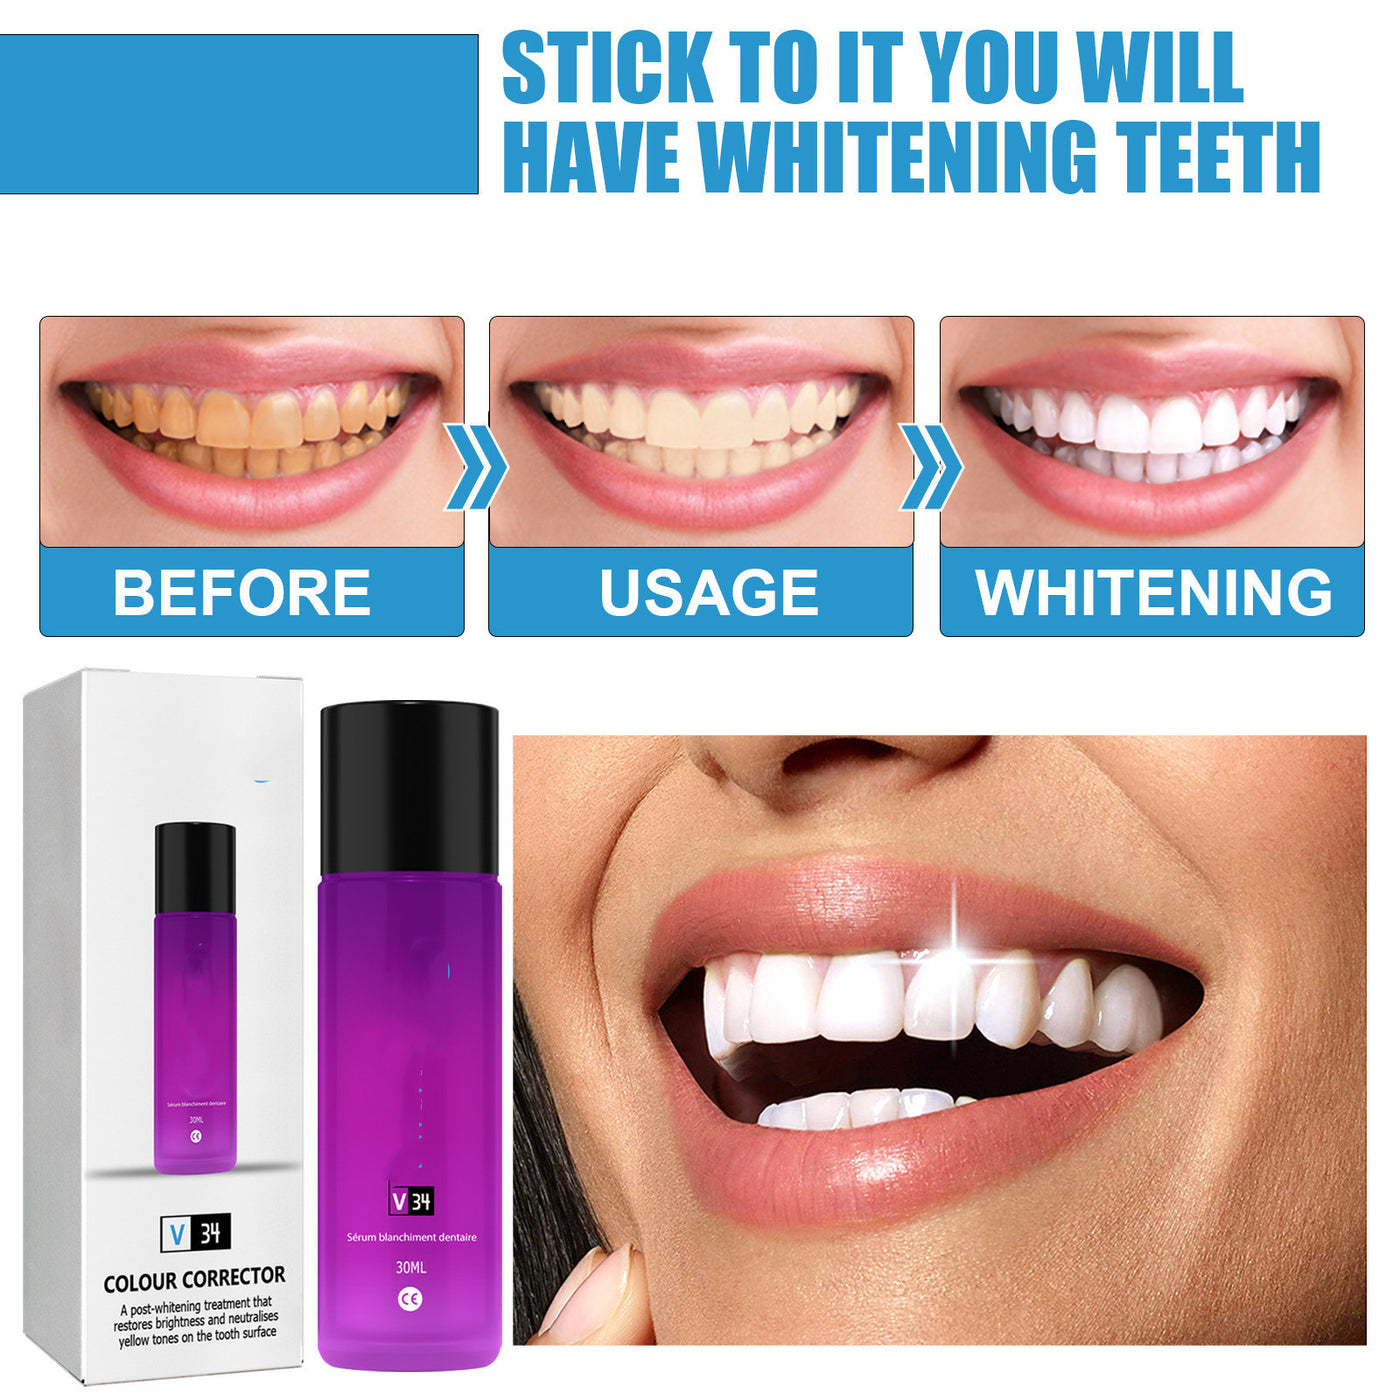 Whitening Tooth Serum